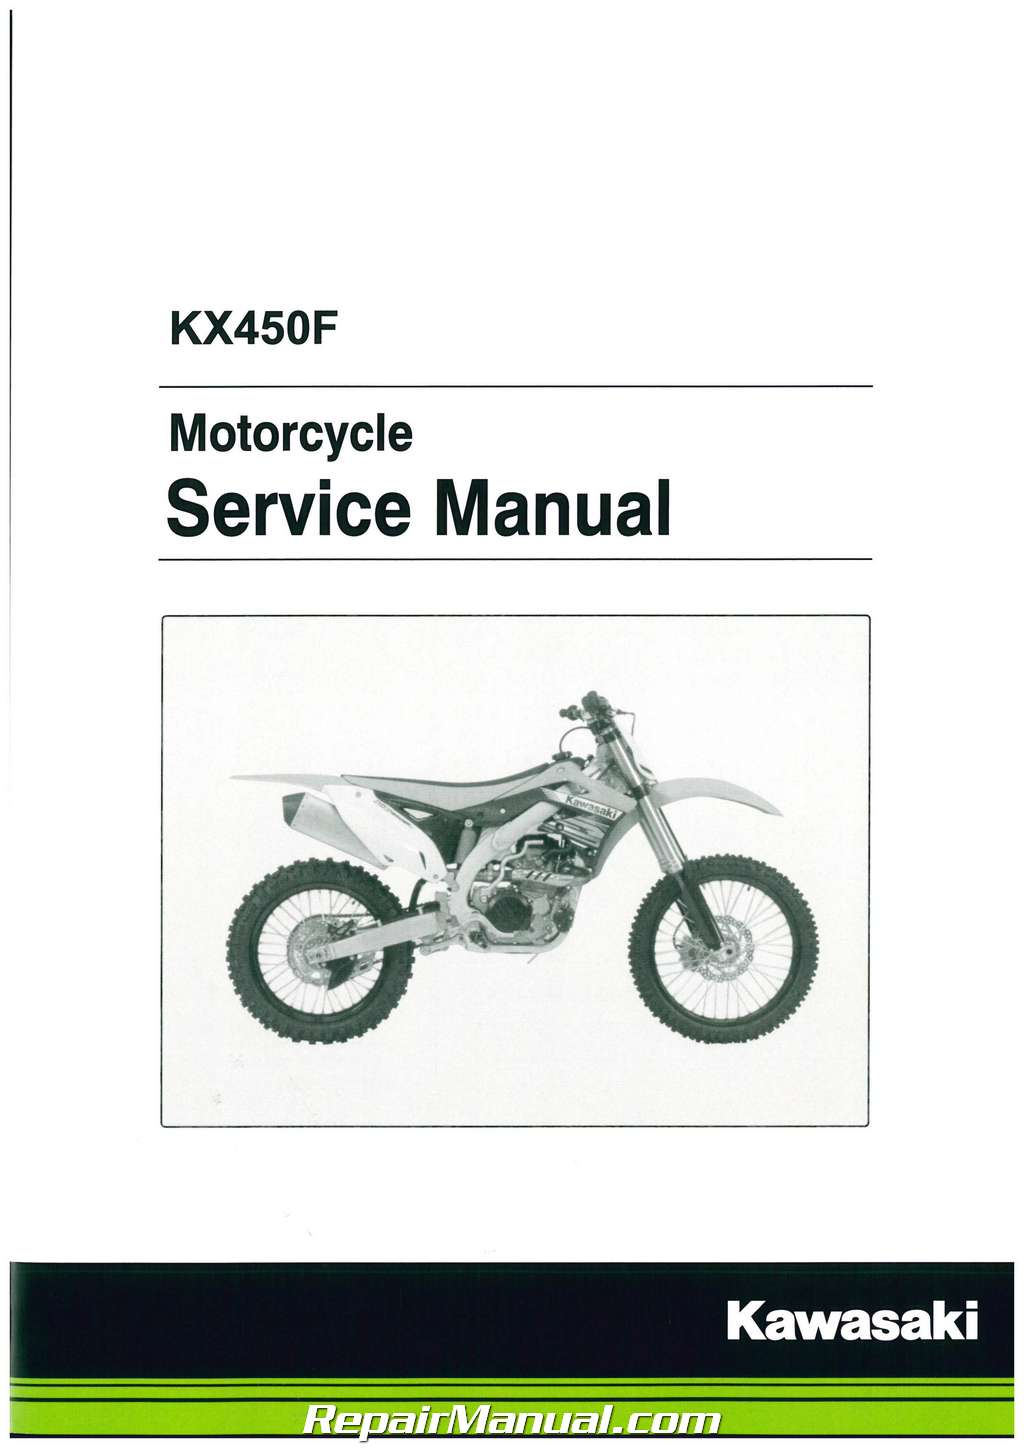 Kawasaki KX450F 2013 2014 2015 Motorcycle Service Manual